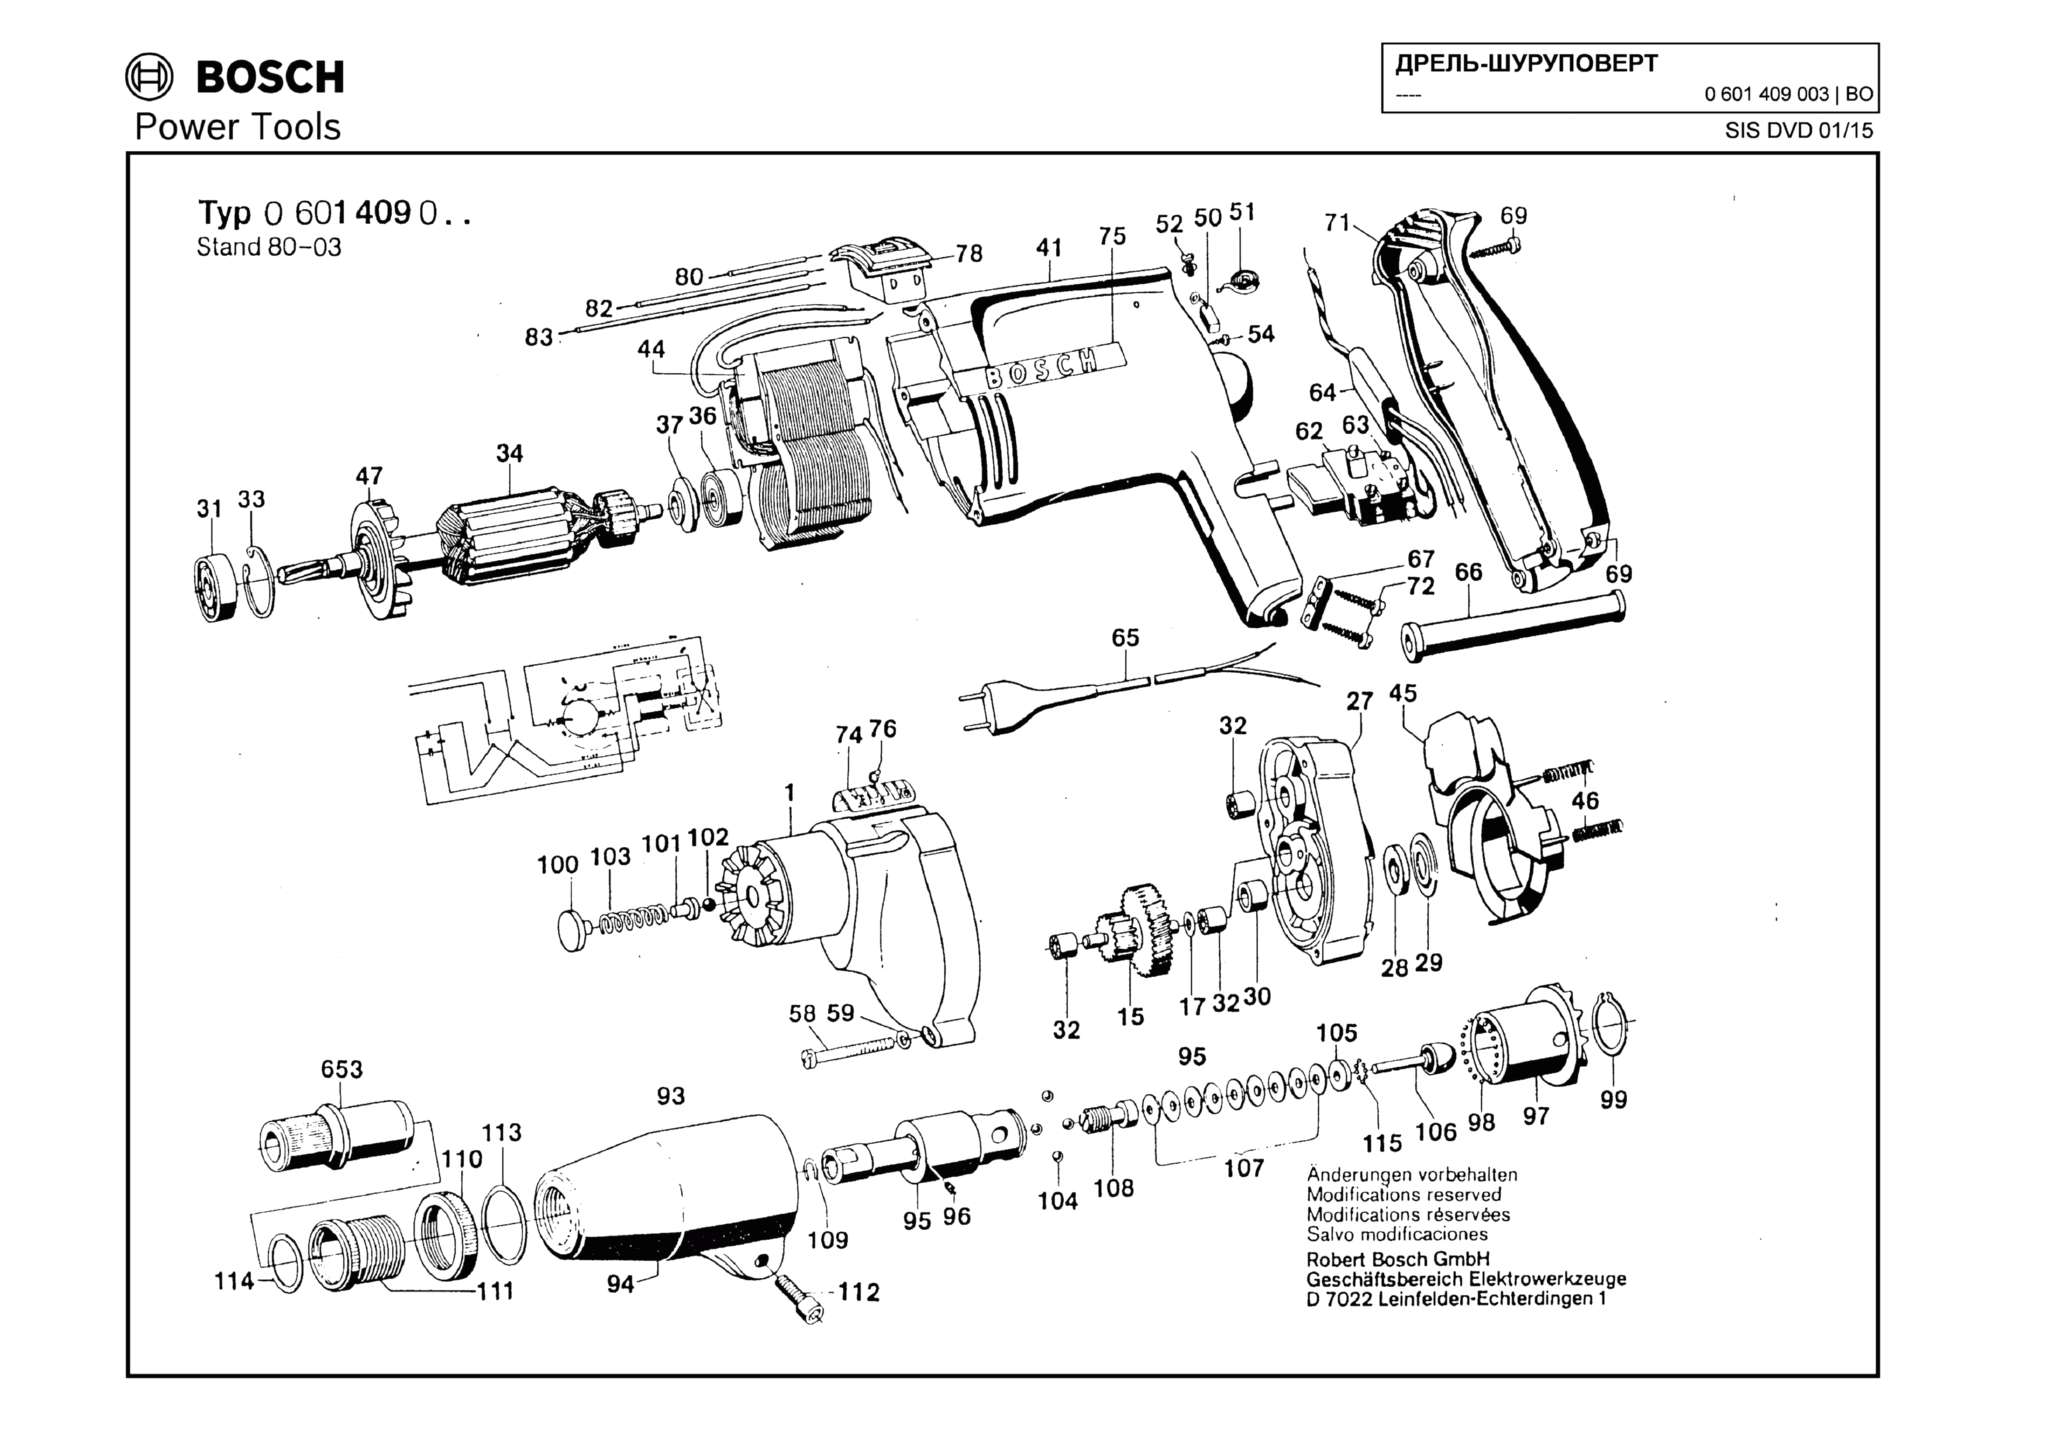 Запчасти, схема и деталировка Bosch (ТИП 0601409003)